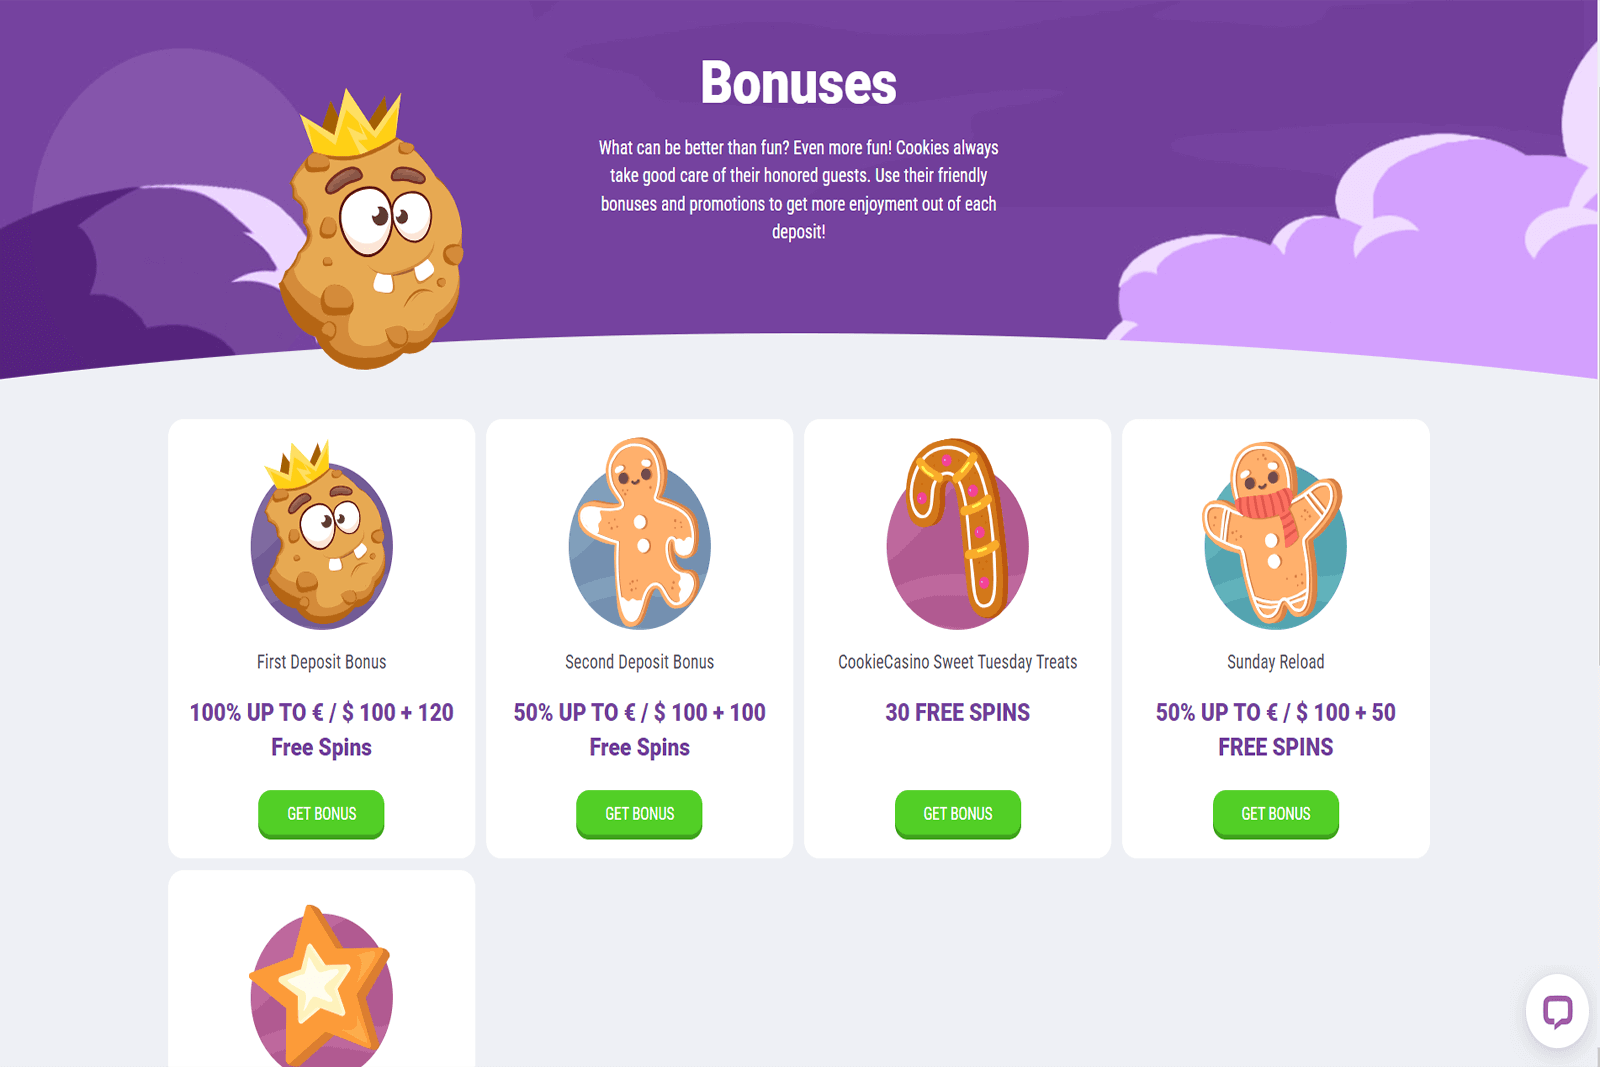 TOFCasino.com   Cookie Casino Bonuses